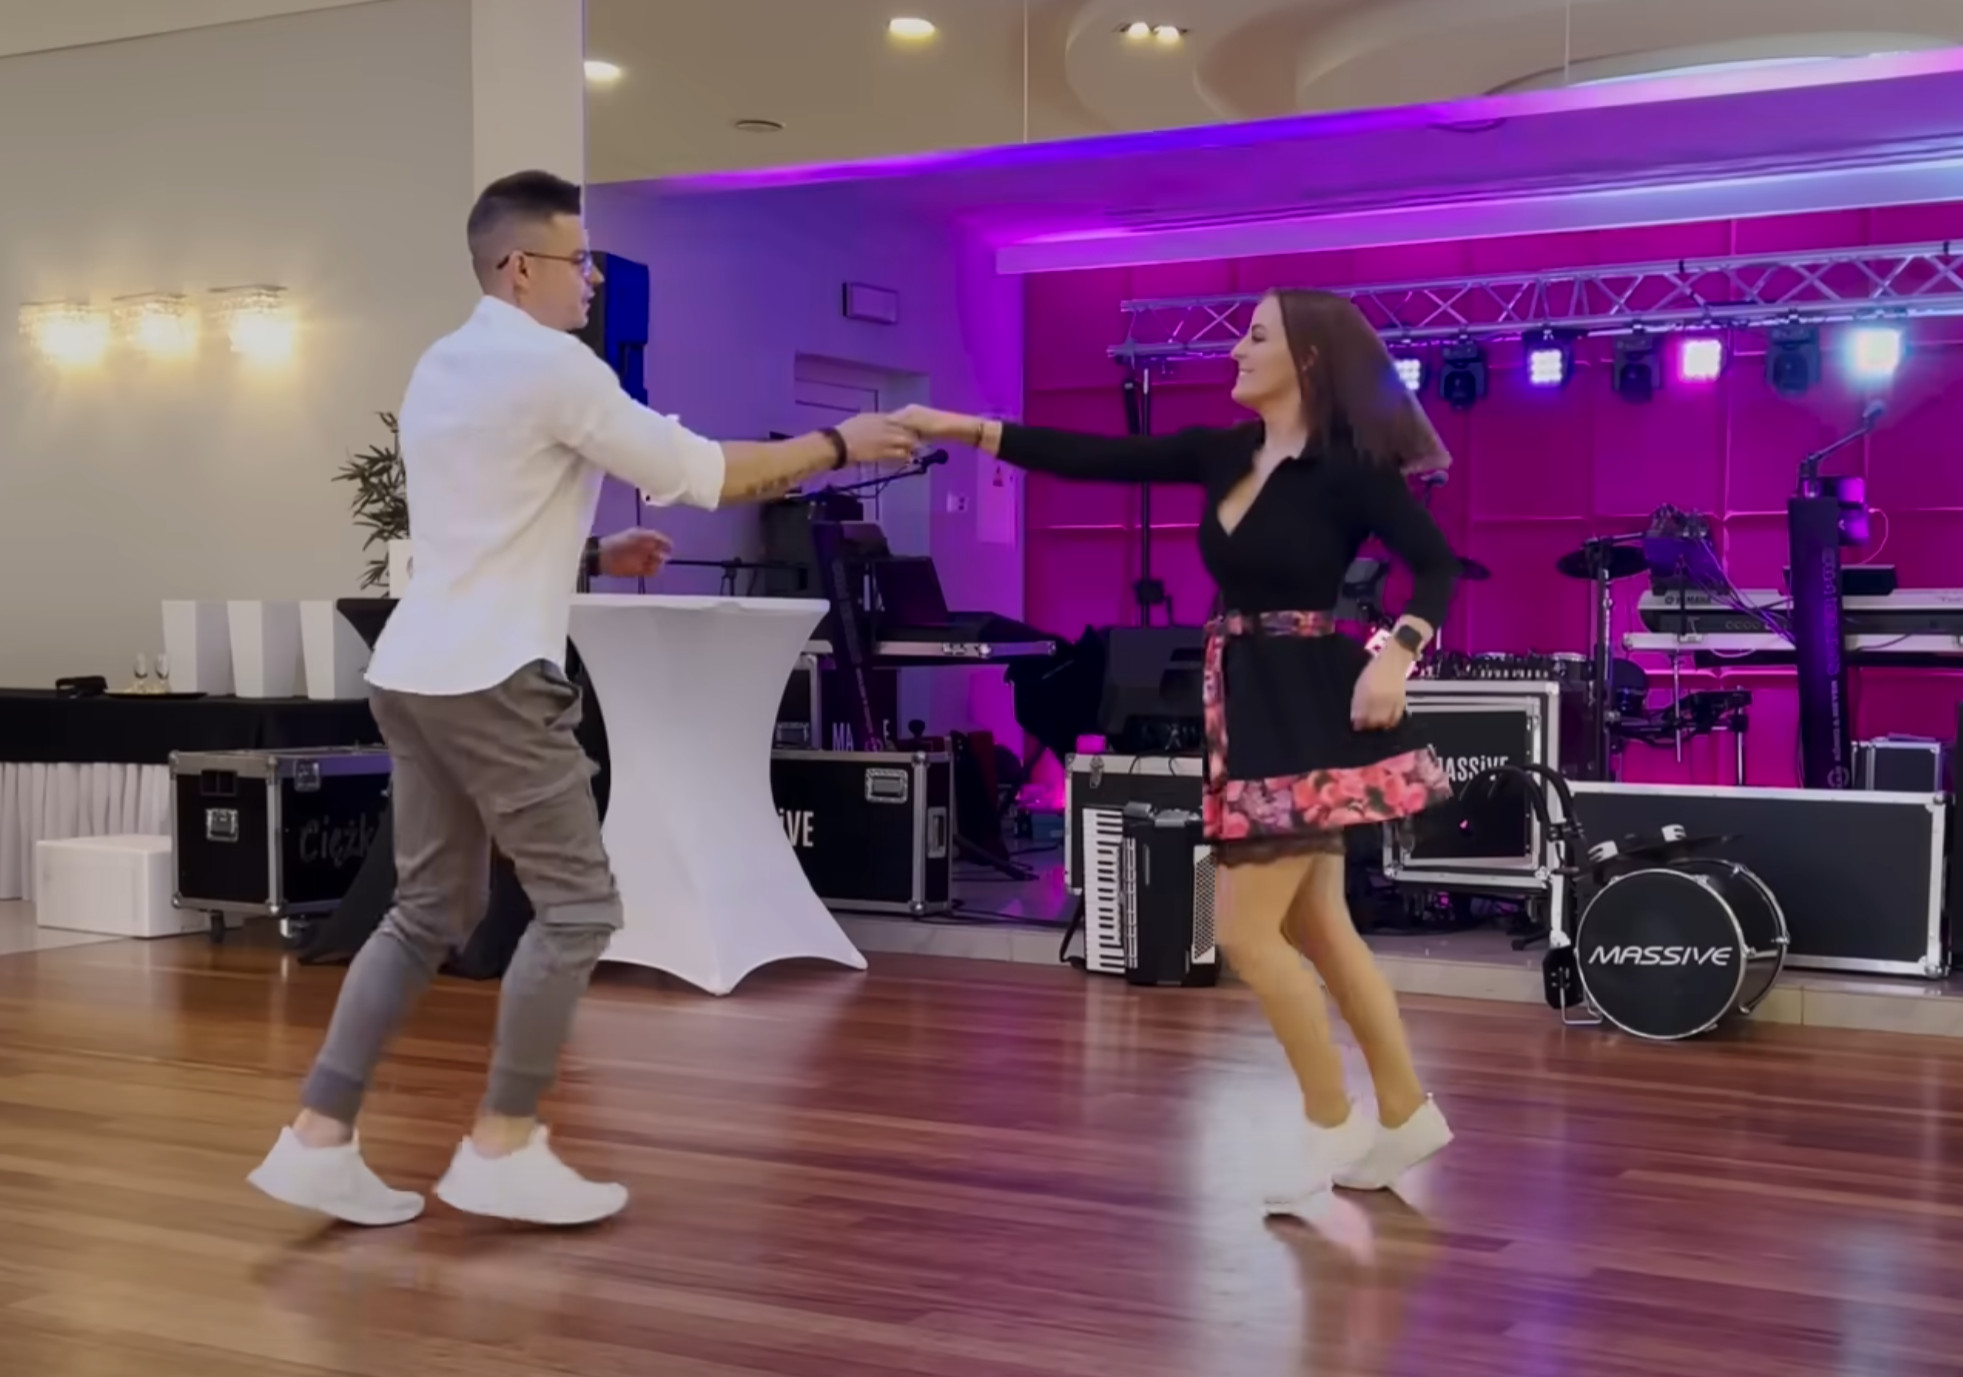 Mega premiera Massive podbija parkiety weselne! „O miła moja” w nowej odsłonie i ten taniec | VIDEO